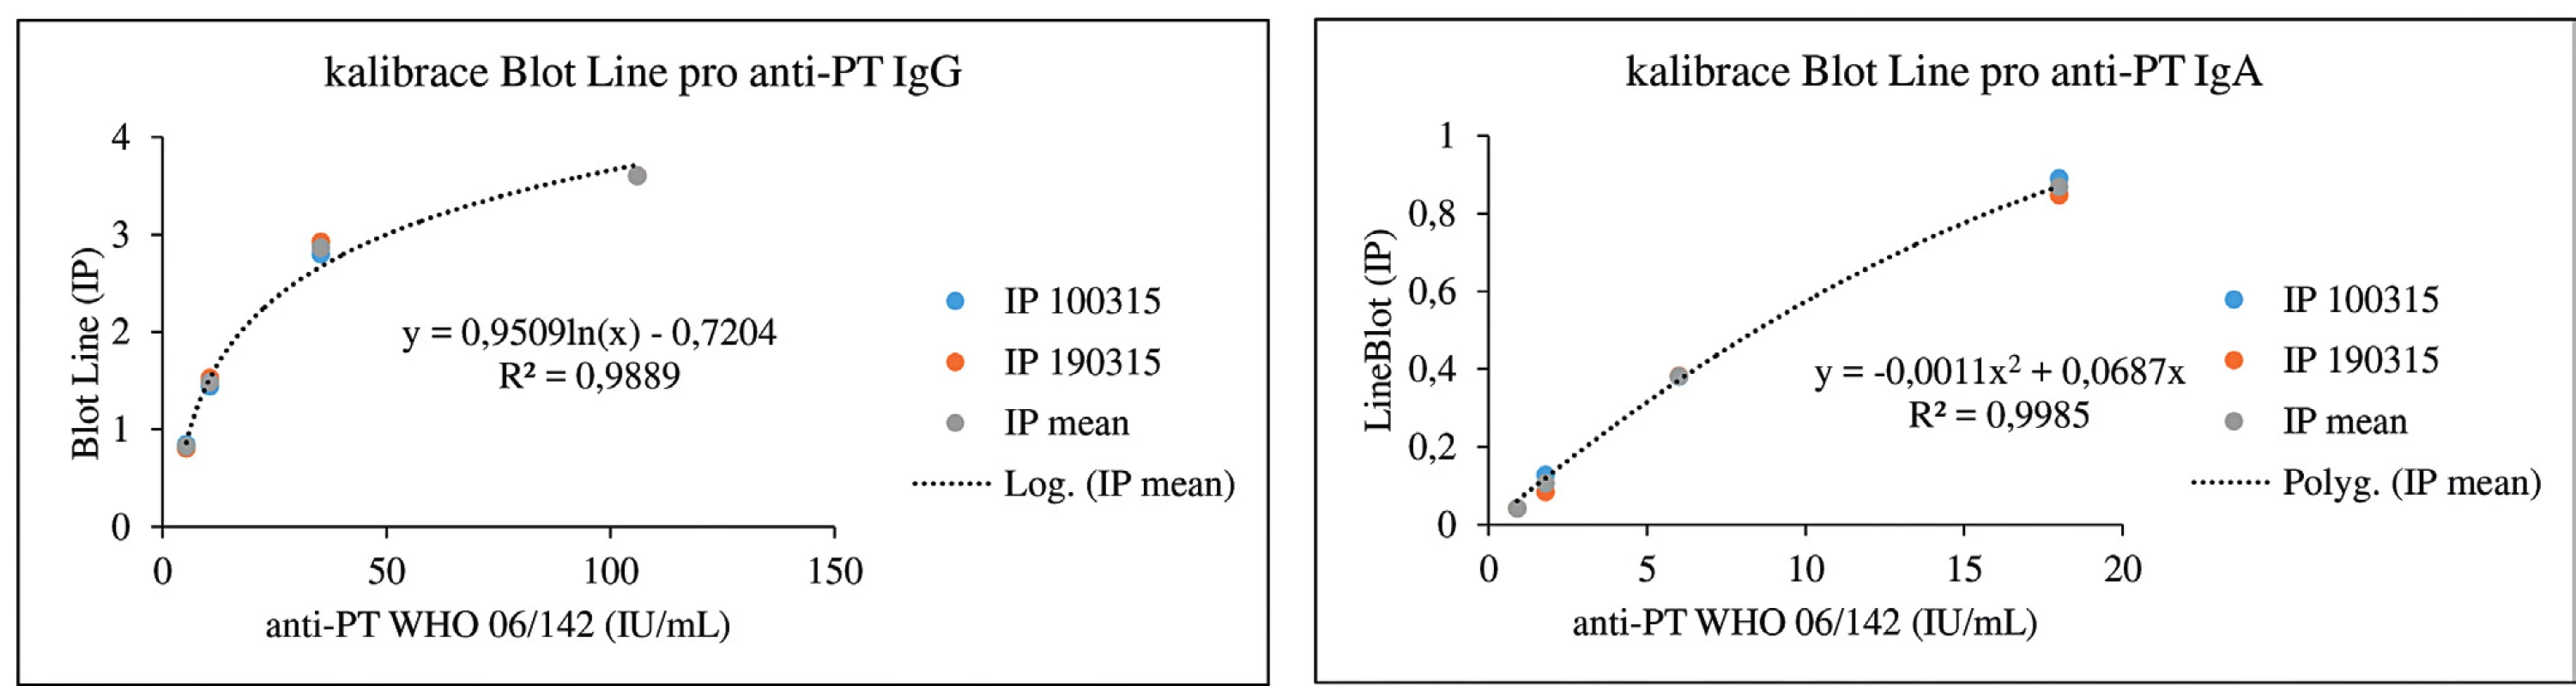 Kalibrační křivky pro stanovení anti-PT protilátek pomocí soupravy BLOT LINE
Kalibrace byly provedeny dvakrát, vynášeny jsou naměřené hodnoty v jednotlivých dnech a průměrné hodnoty obou měření. Pro sestrojení kalibračních křivek byly použity soupravy firmy TestLine Clinical Diagnostics.
IP = index pozitivity
Figure 1. Calibration curves for the determination of anti-PT antibodies using the BLOT LINE kit
Calibrations were performed twice, plotted are the values measured on each day and means of both measurements. To construct the calibration curves, the TestLine Clinical Diagnostics kits were used. IP = positivity index